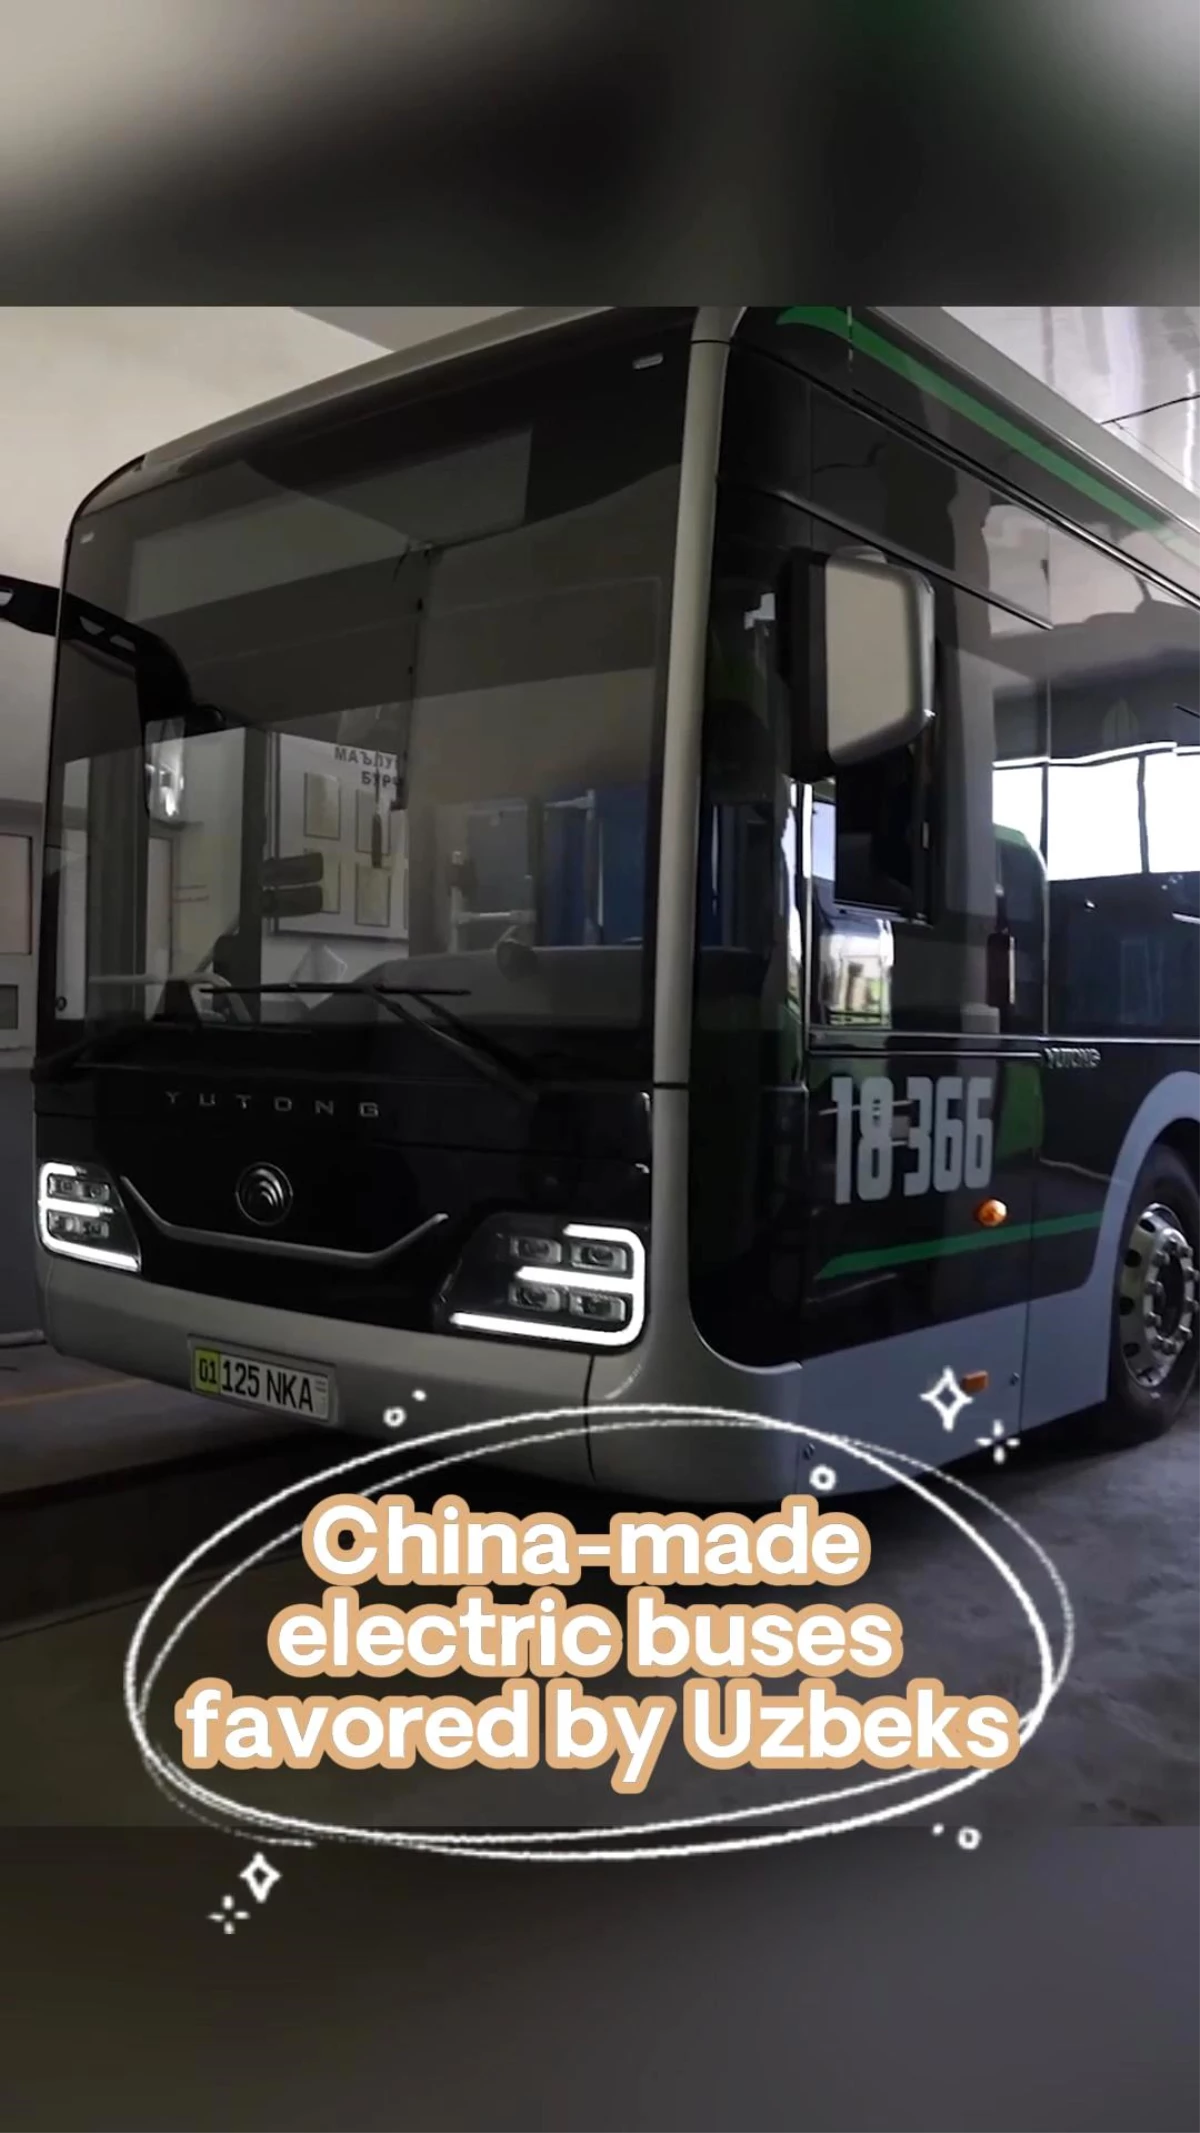 Özbekistan\'ın Başkenti Taşkent\'te Çin Yapımı Elektrikli Otobüsler Hizmet Veriyor